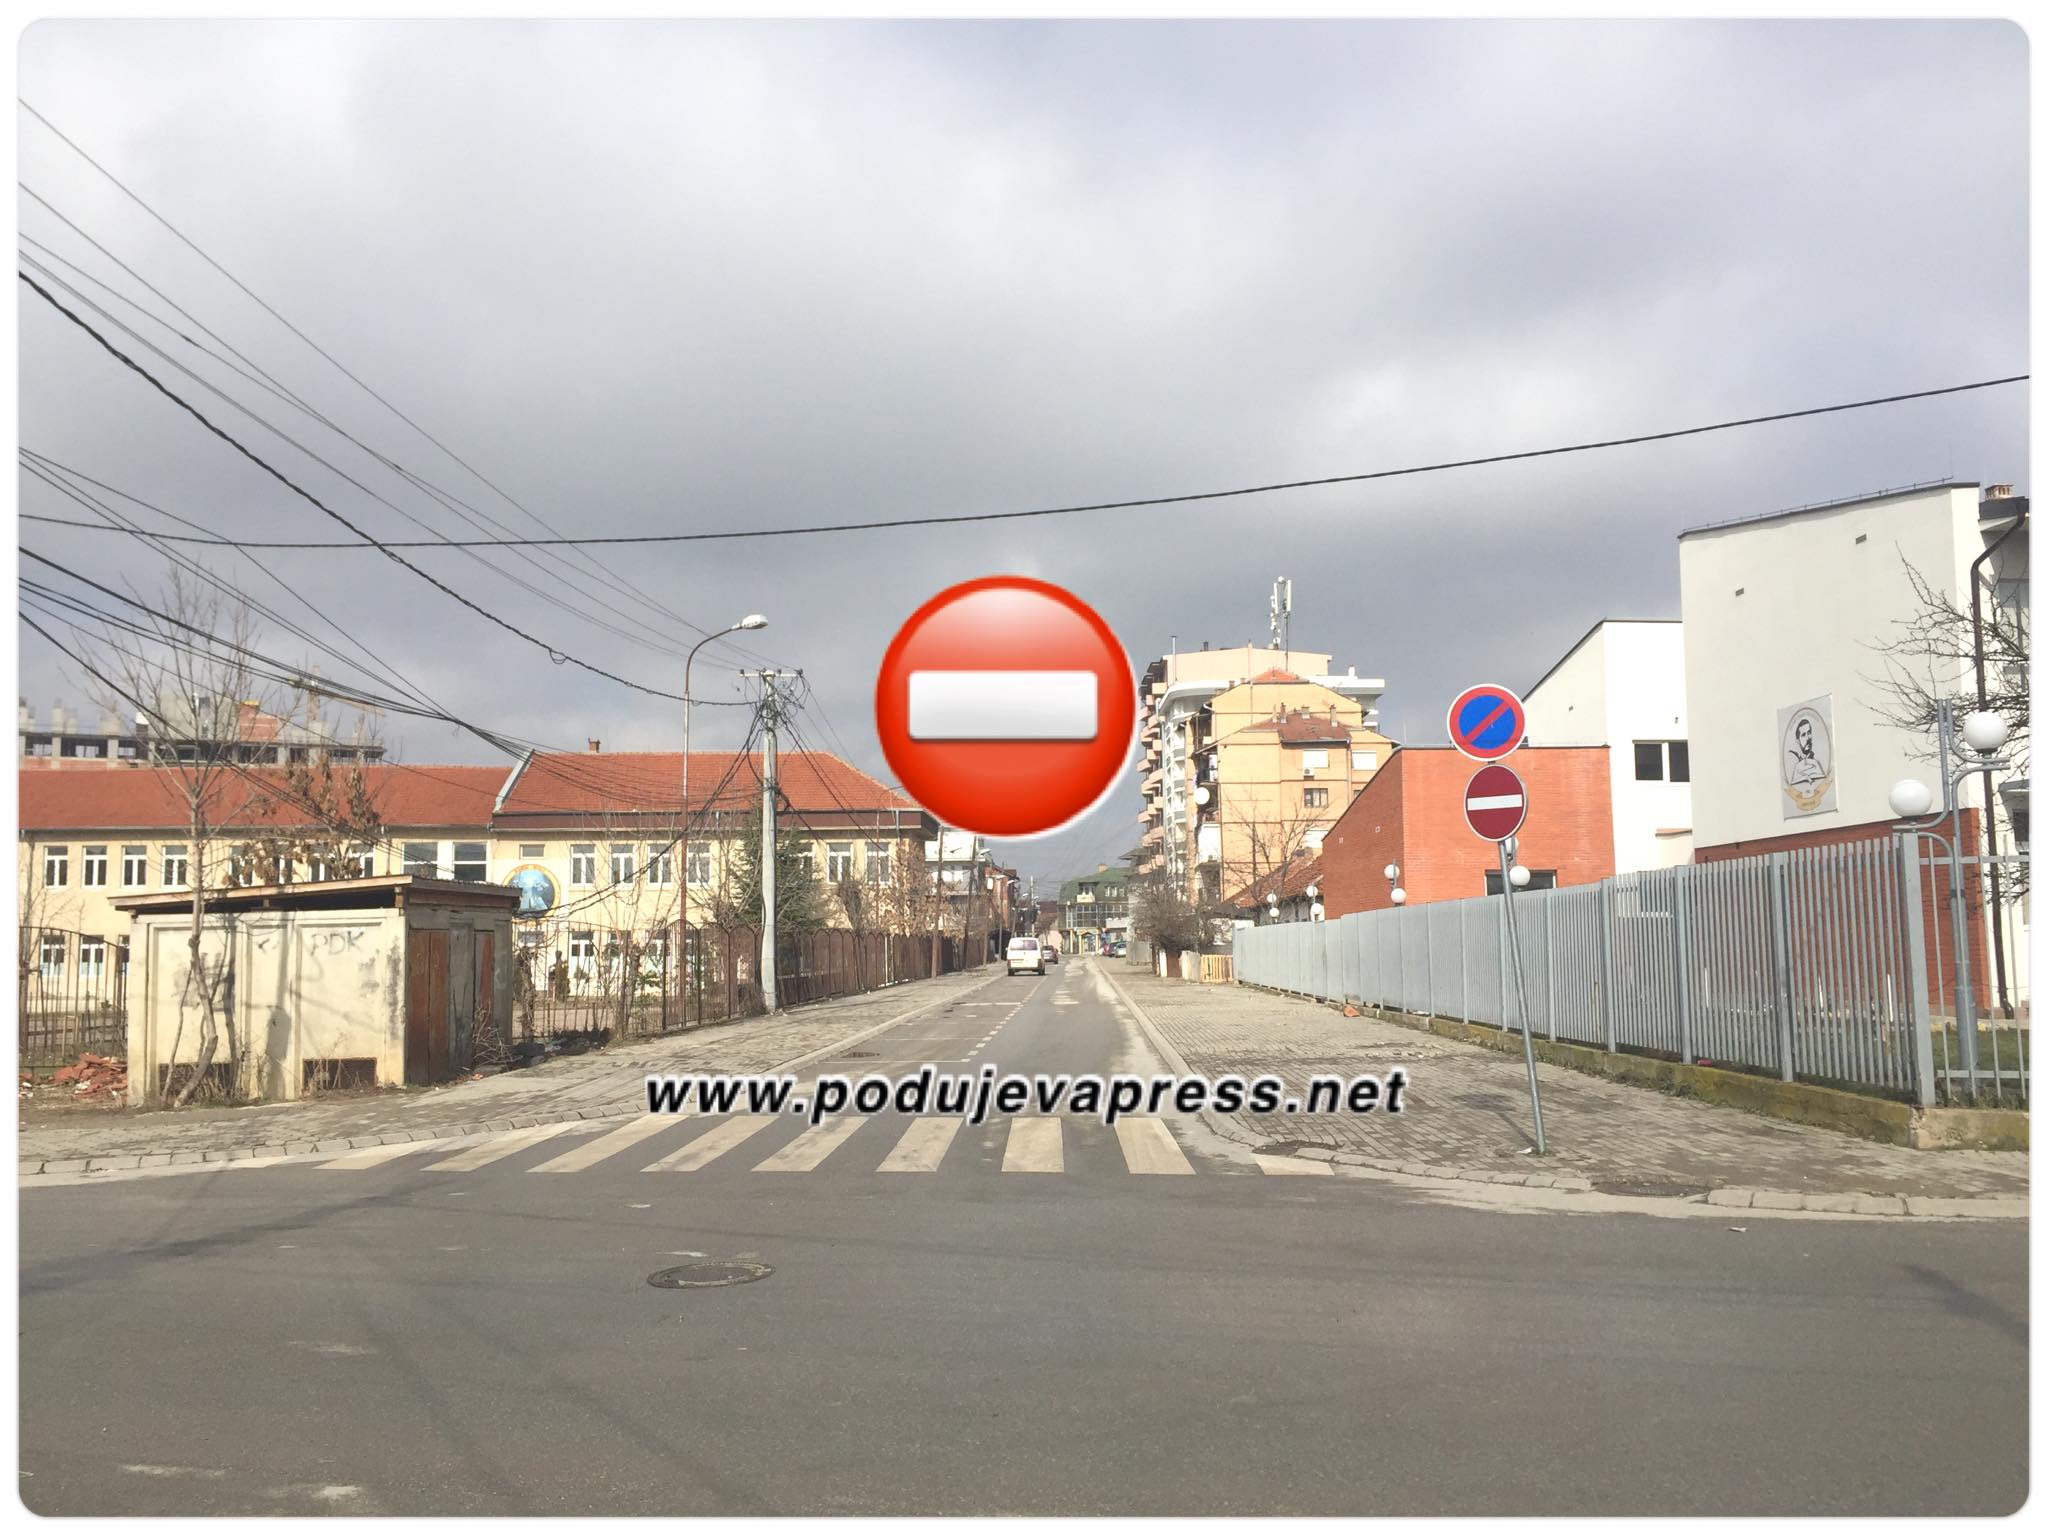  KUJDES, punimet në shesh, Komuna e Podujevës ndryshon kahjet e disa rrugëve në qytet |FOTO